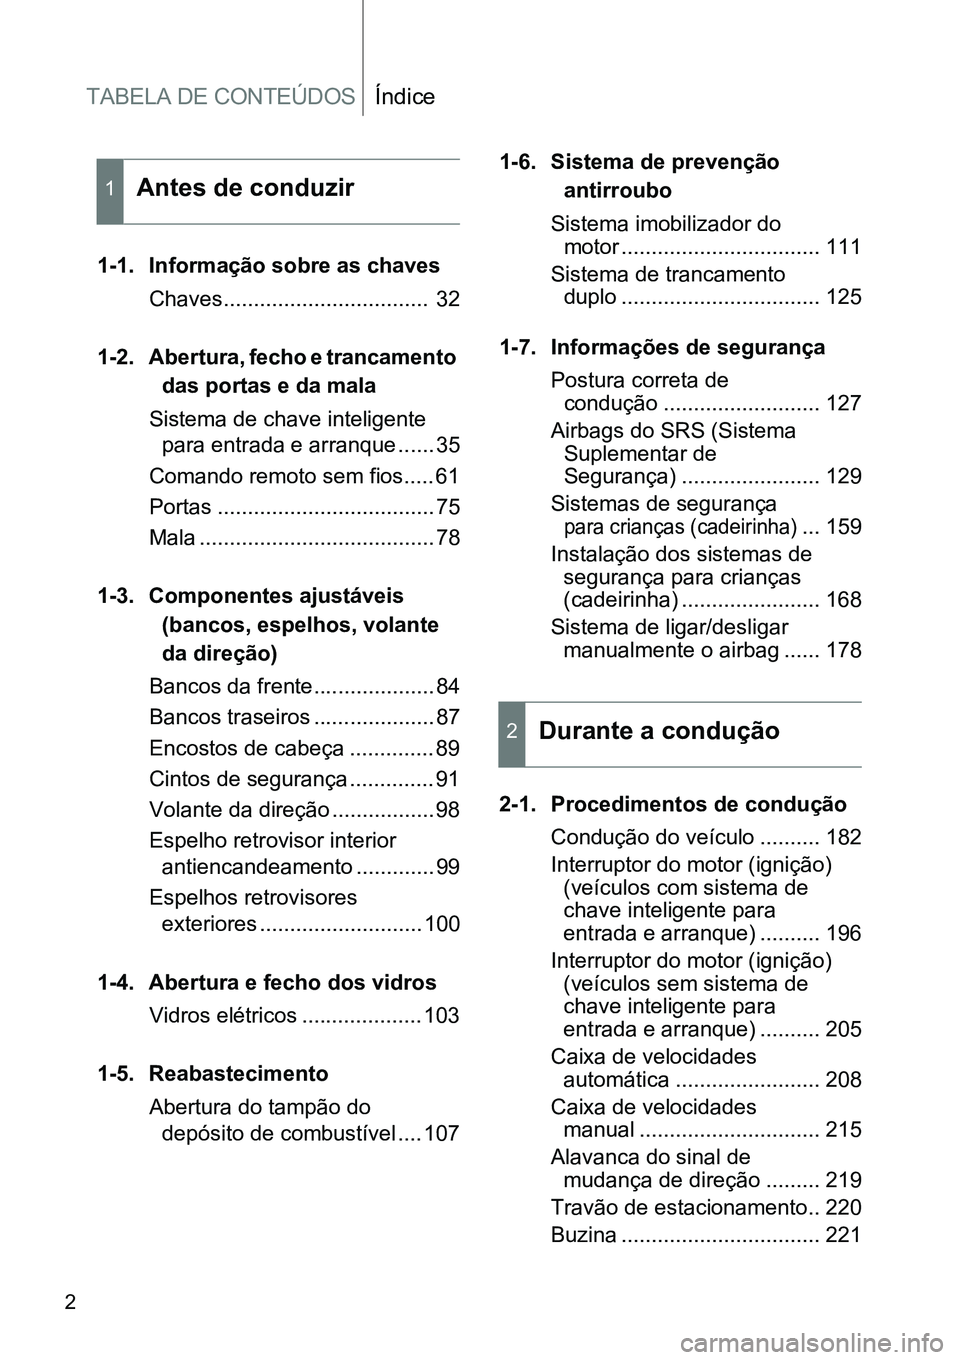 TOYOTA GT86 2018  Manual de utilização (in Portuguese) TABELA DE CONTEÚDOSÍndice
2
1-1. Informação sobre as chaves
Chaves..................................  32
1-2. Abertura, fecho e trancamento 
das portas e da mala
Sistema de chave inteligente 
para